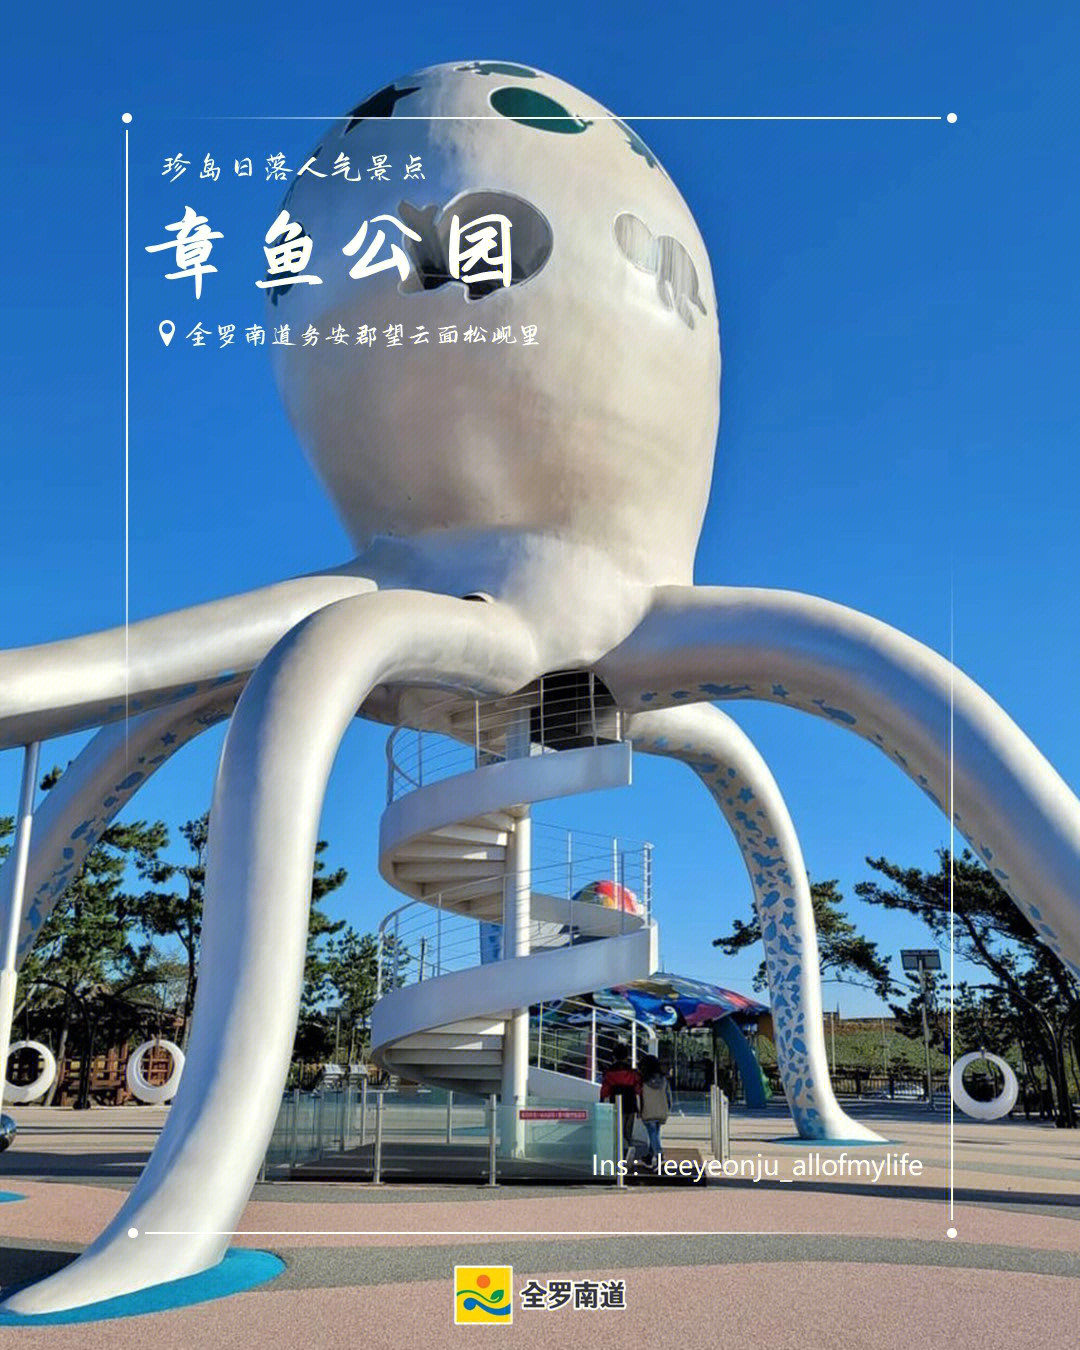 章鱼公园日本动画图片